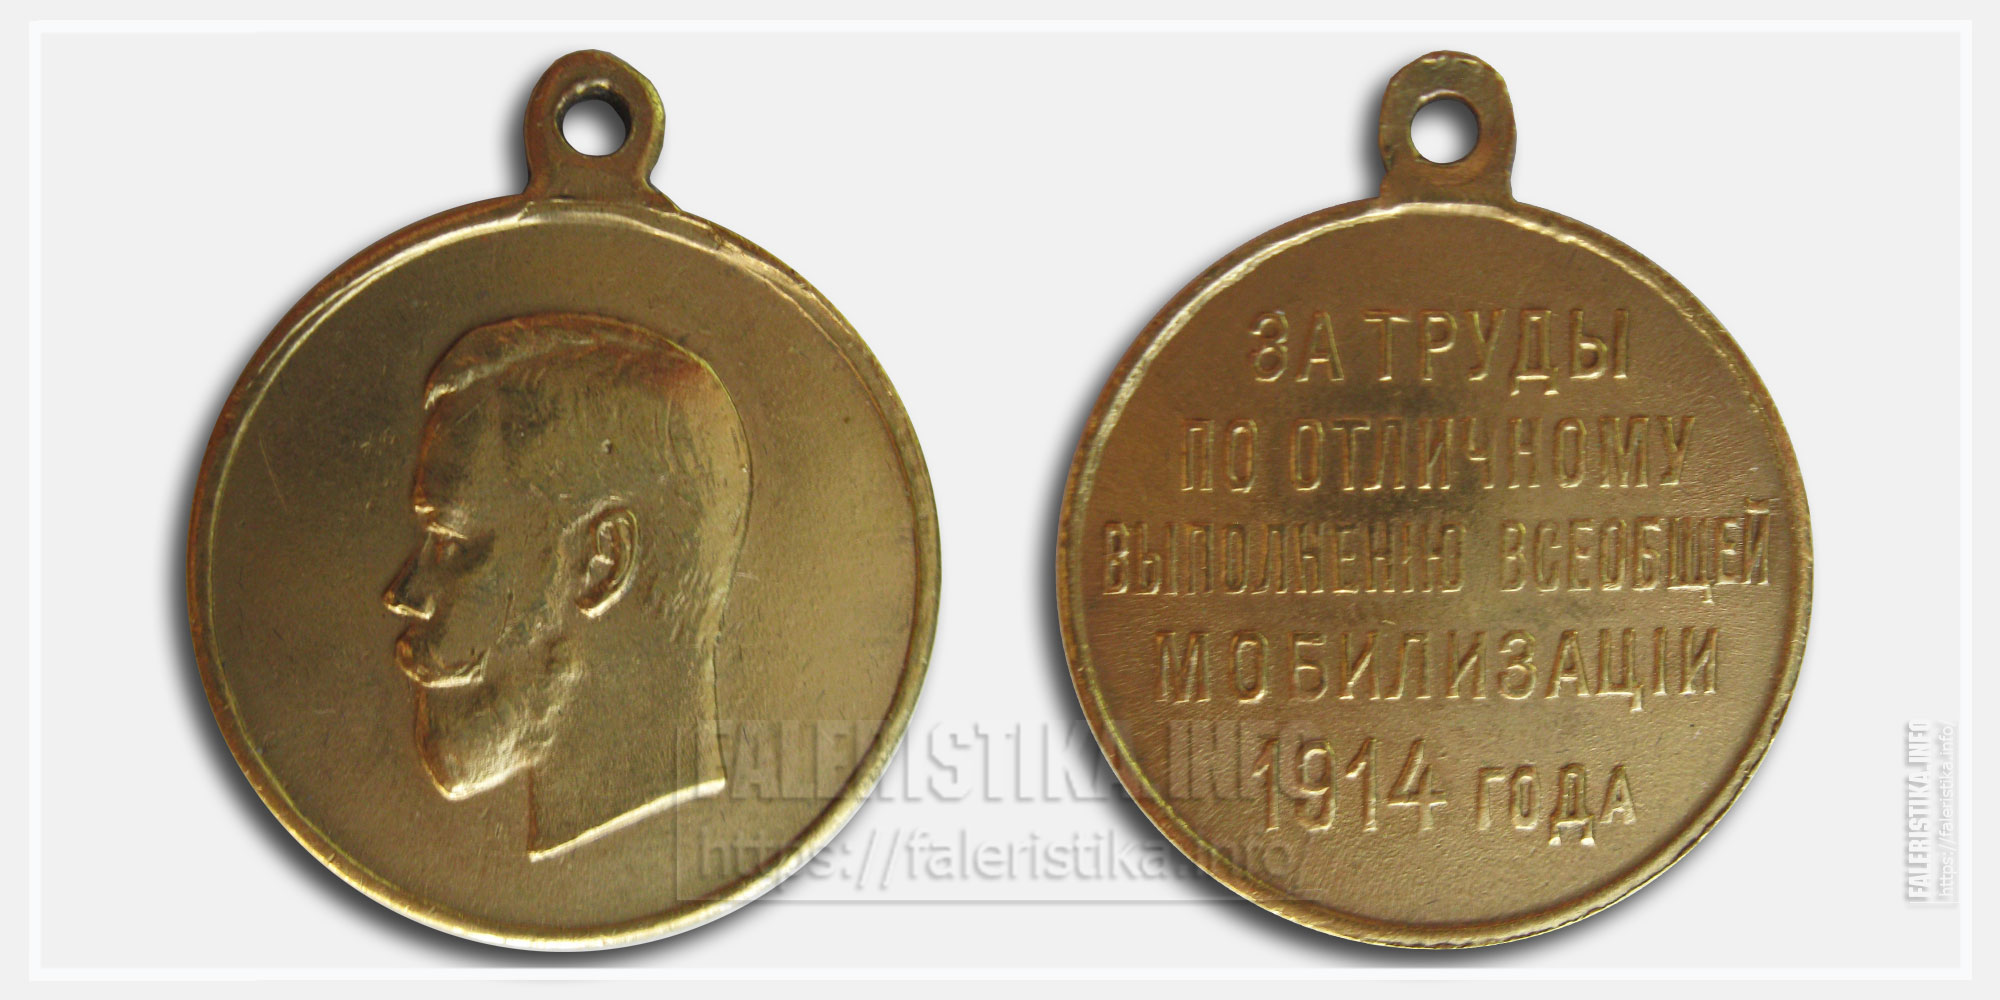 Медаль "За труды по отличному выполнению всеобщей мобилизации 1914"